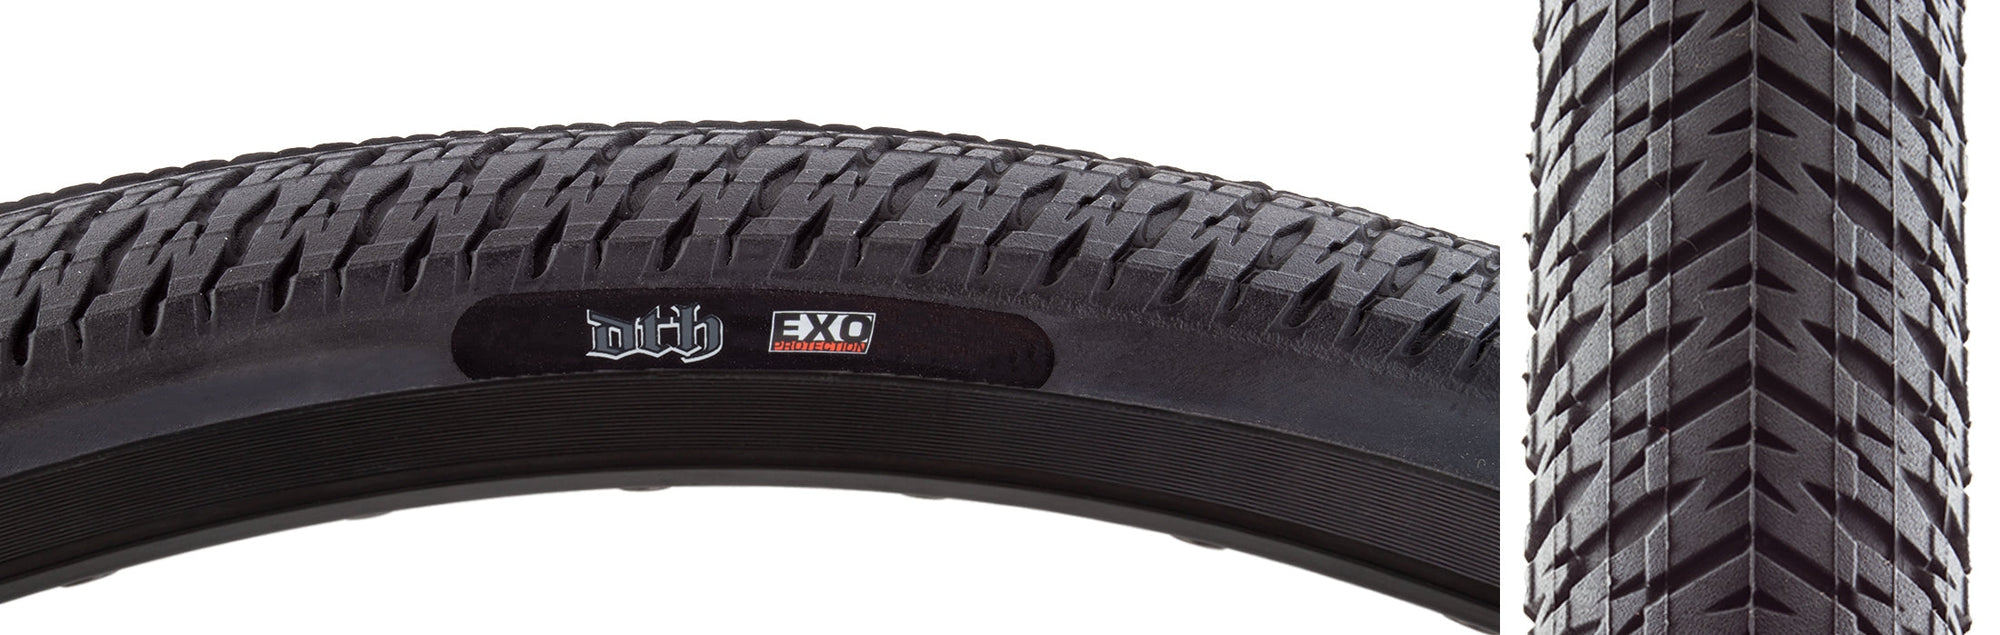 20x2.20 Maxxis DTH Folding Tire - All Black